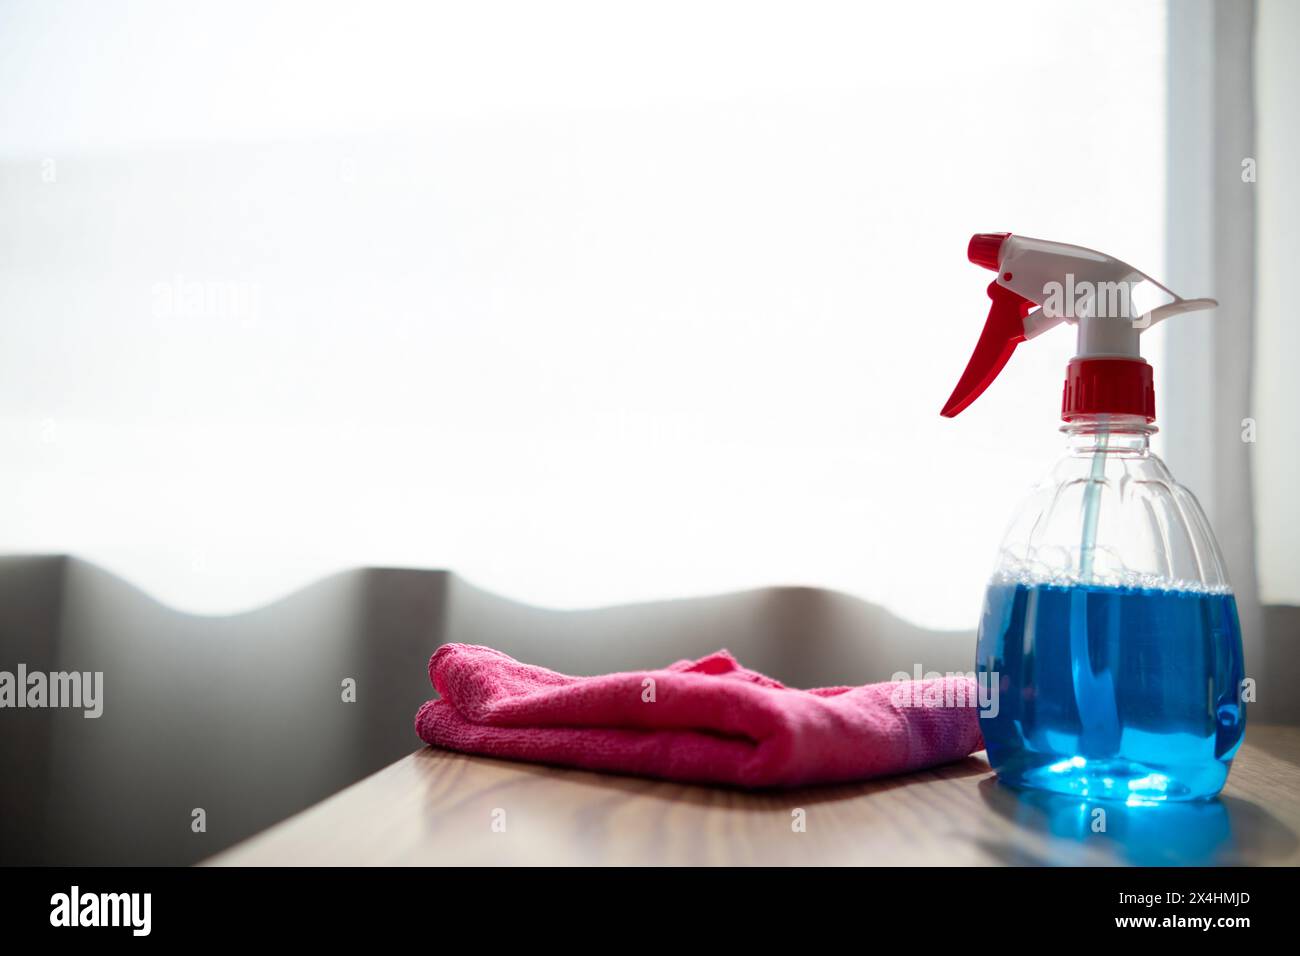 La soluzione detergente a base di disinfettante è preparata in un flacone spray per una facile spruzzatura per pulire gli interni degli uffici e le superfici dei mobili. Concetto di Foto Stock